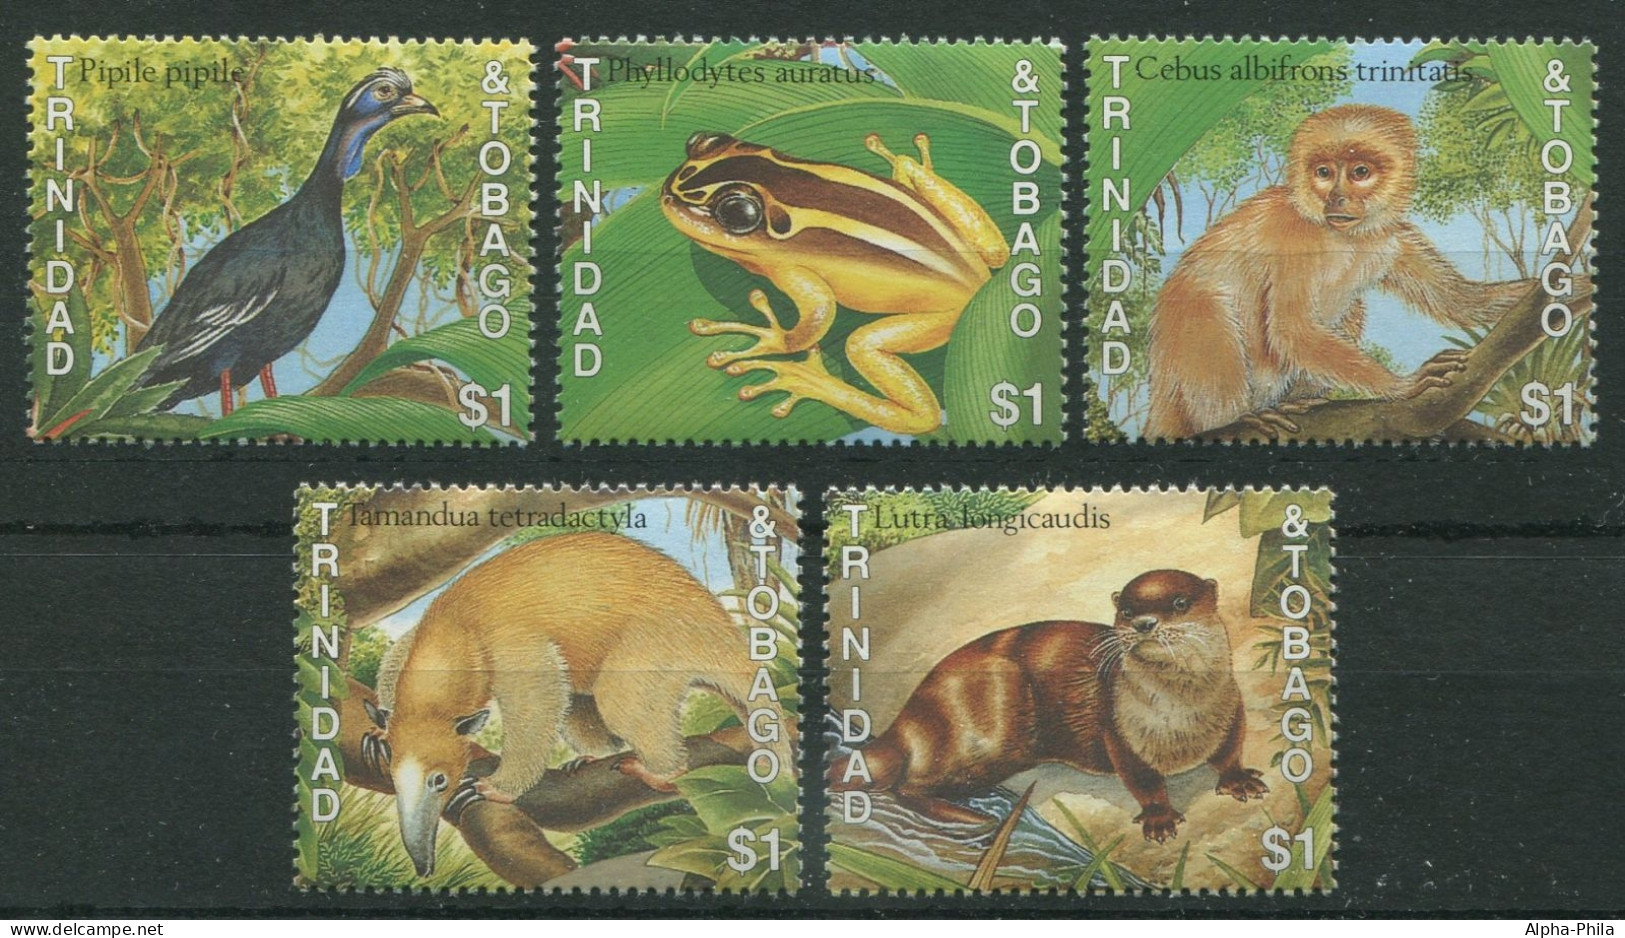 Trinidad & Tobago 1989 - Mi-Nr. 579-583 ** - MNH - Wildtiere / Wild Animals - Trinidad & Tobago (1962-...)